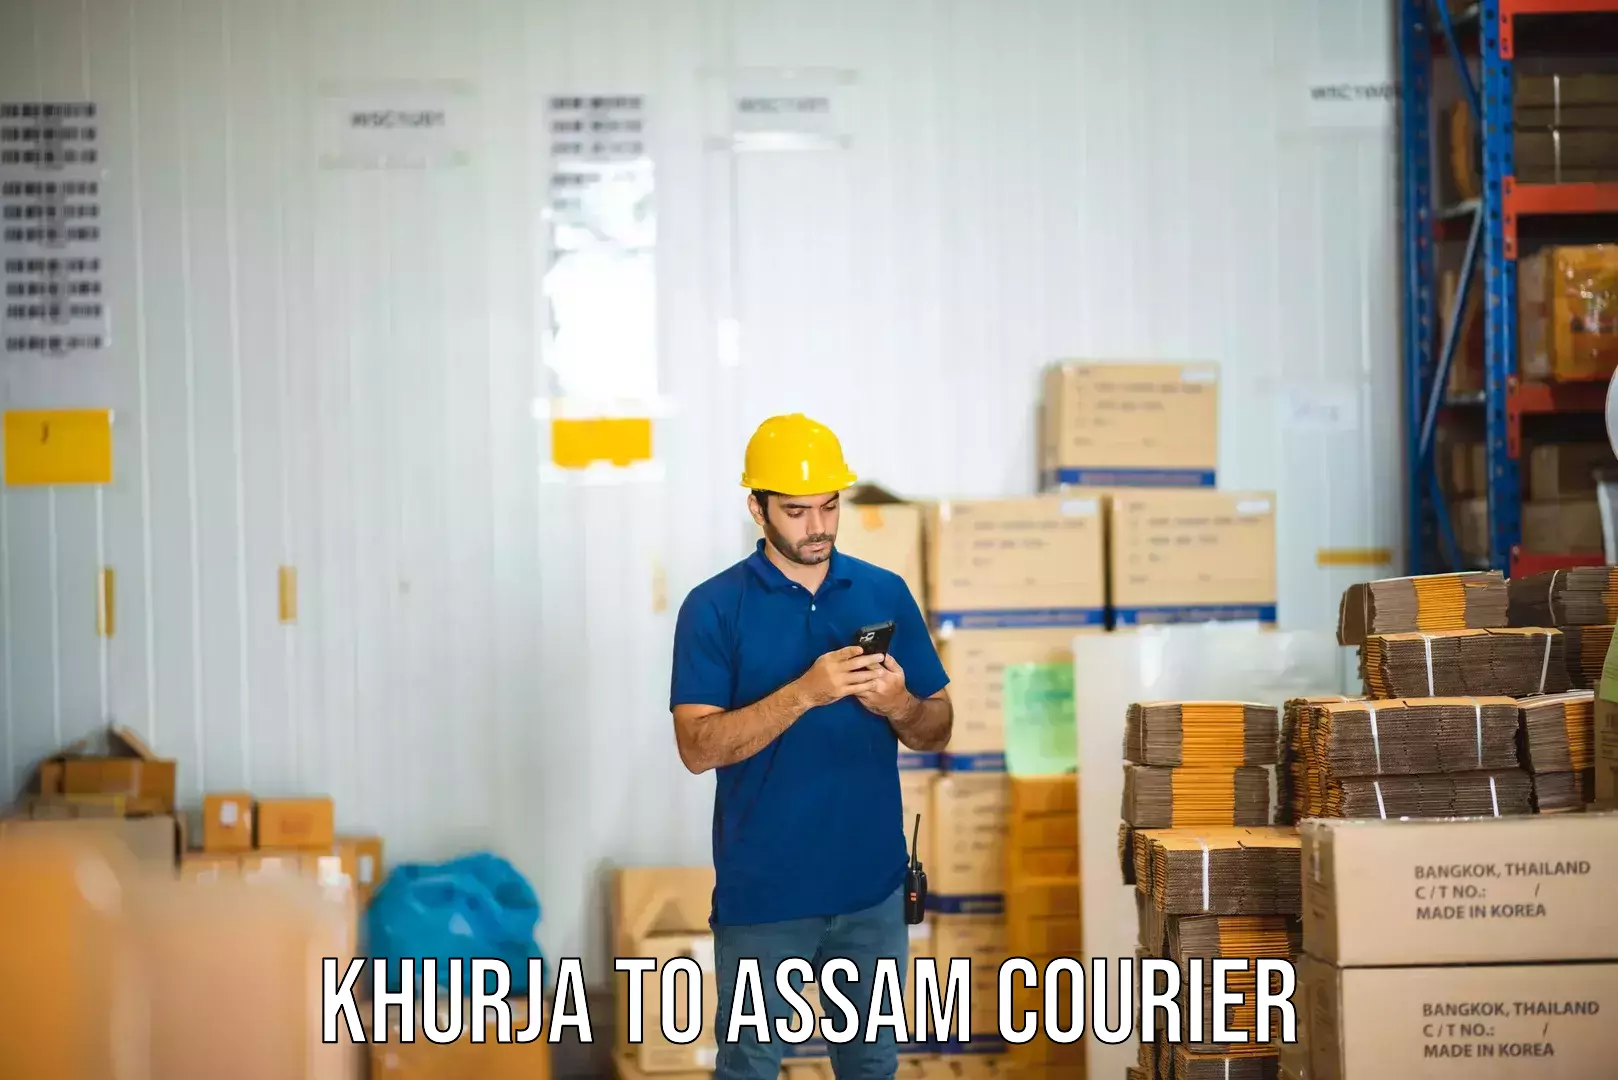 Courier service efficiency in Khurja to Kampur